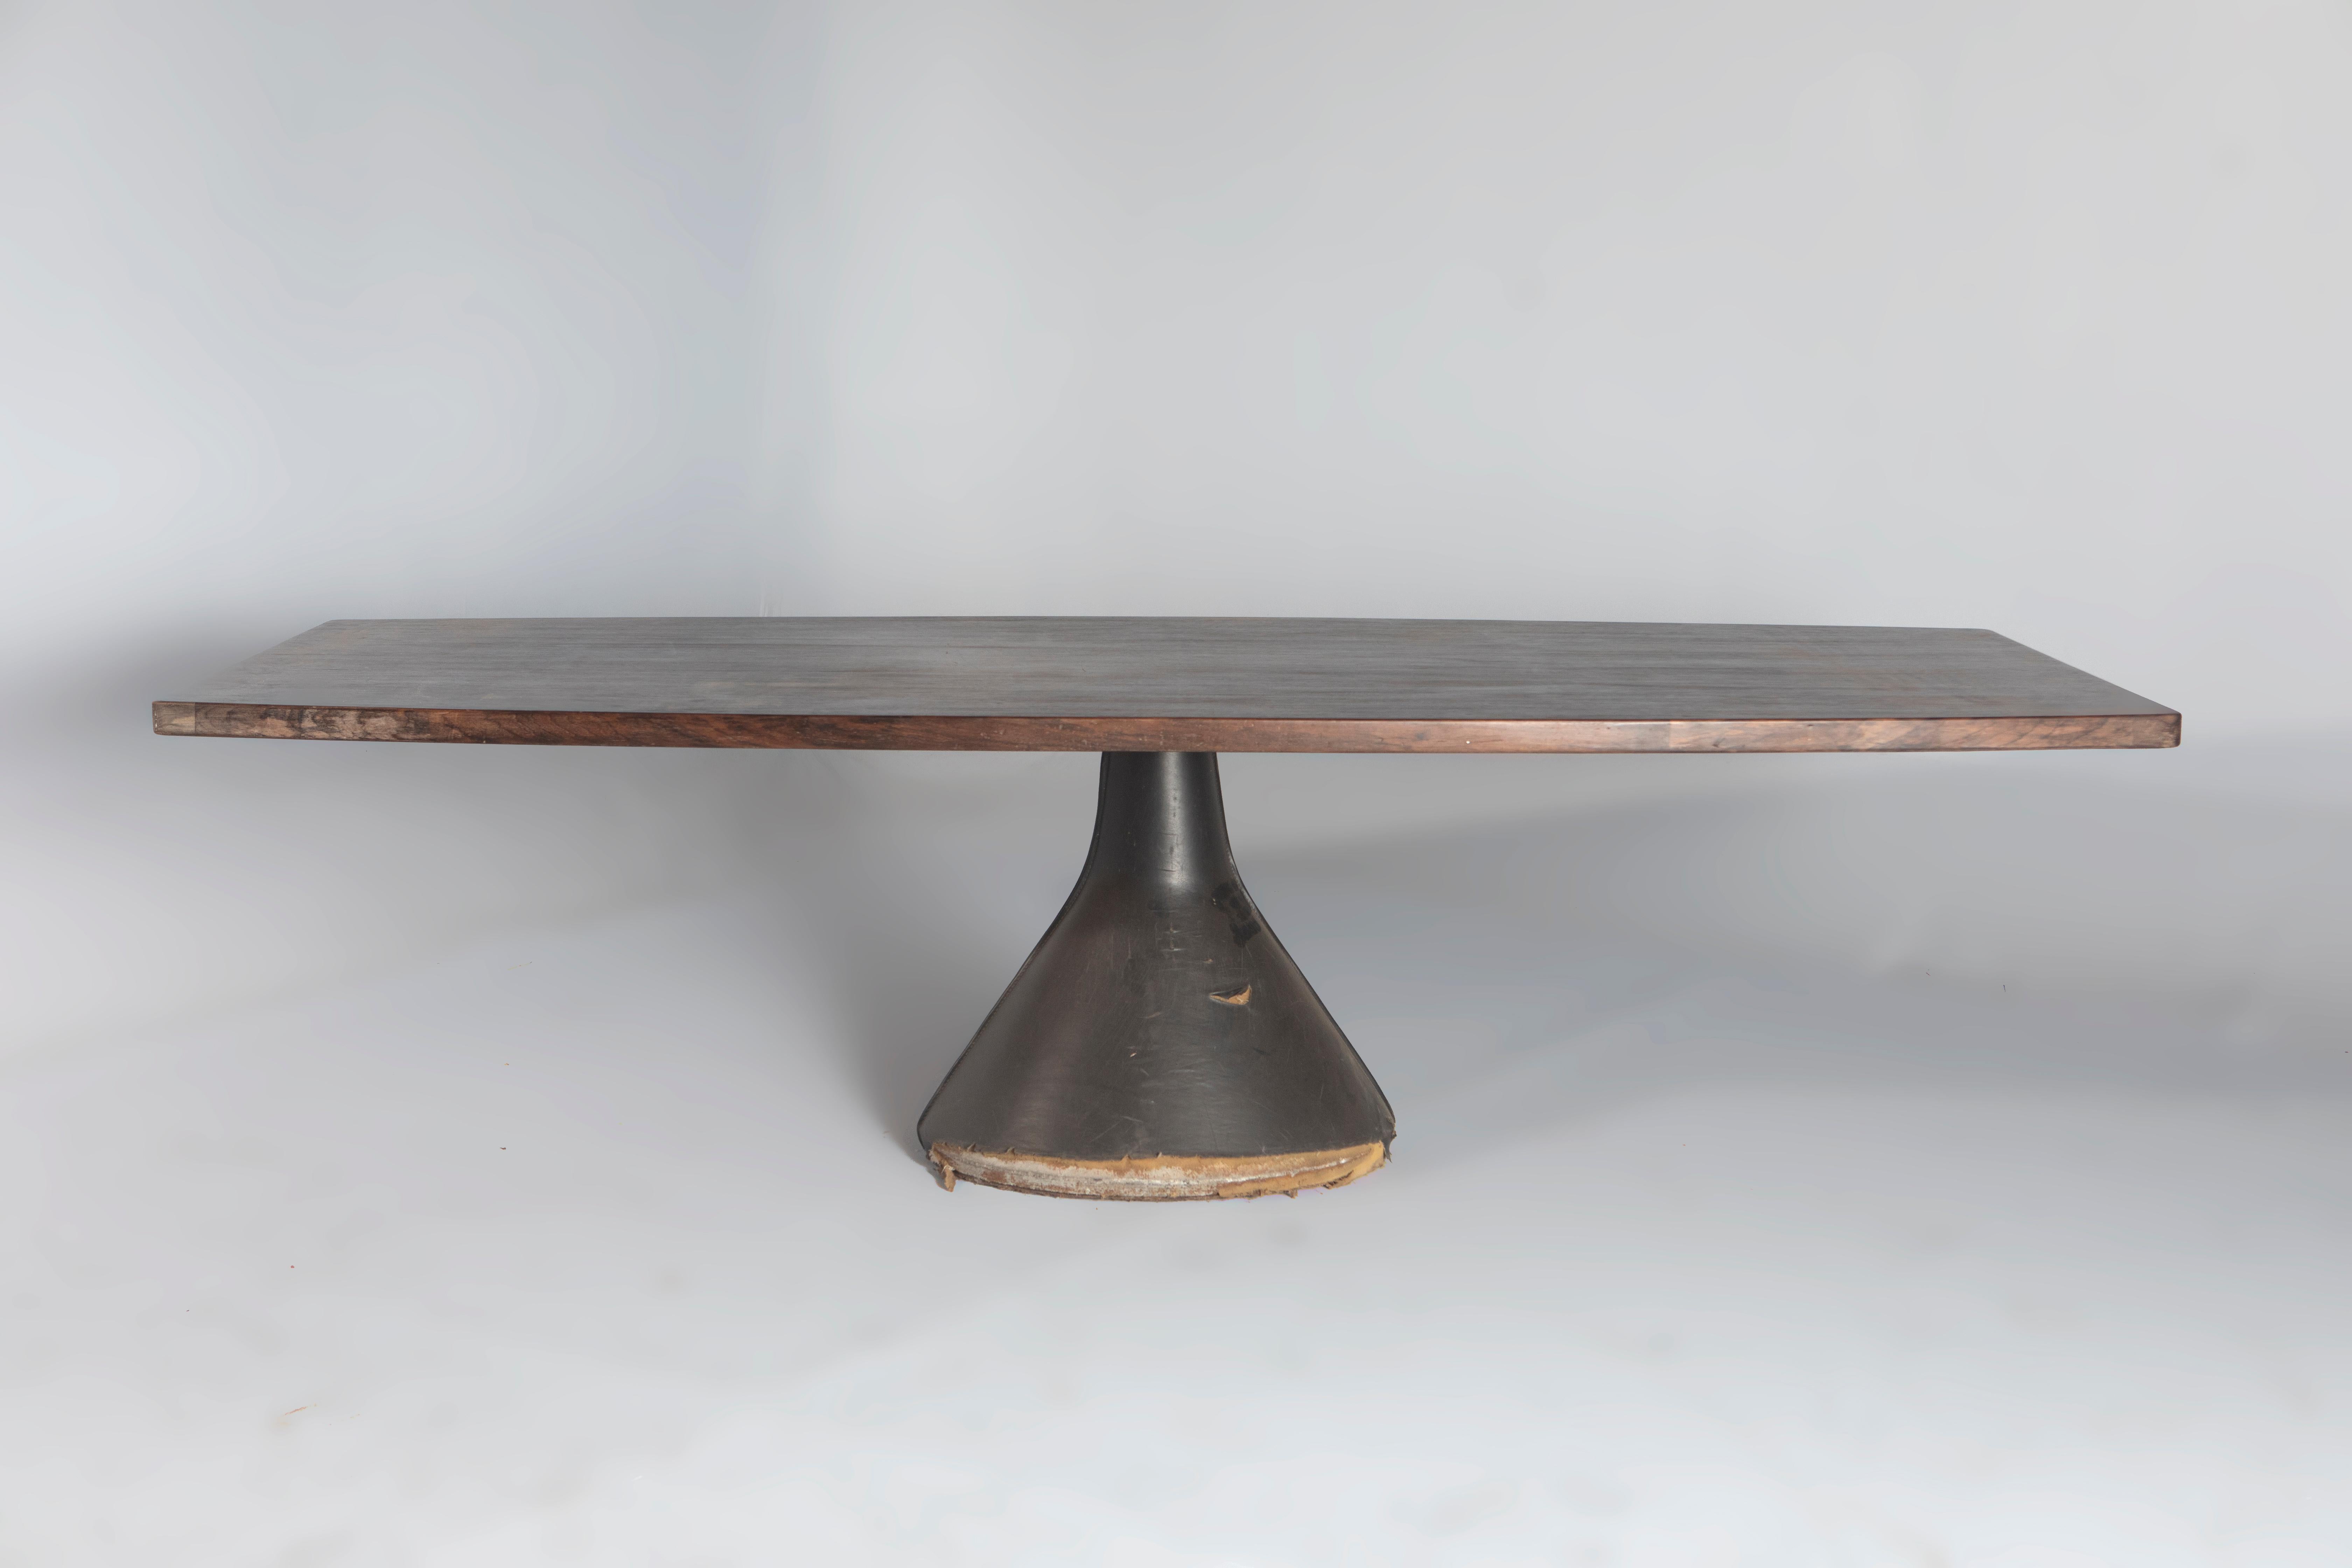 Moderner Guanabara-Tisch von Jorge Zalszupin aus der Jahrhundertmitte, Brasilien, 1960er Jahre

Der ikonische Guanabara ist ein Tisch, der von Jorge Zalszupin entworfen und von seinem Unternehmen L'Atelier hergestellt wird.
Die Tischplatte ist aus